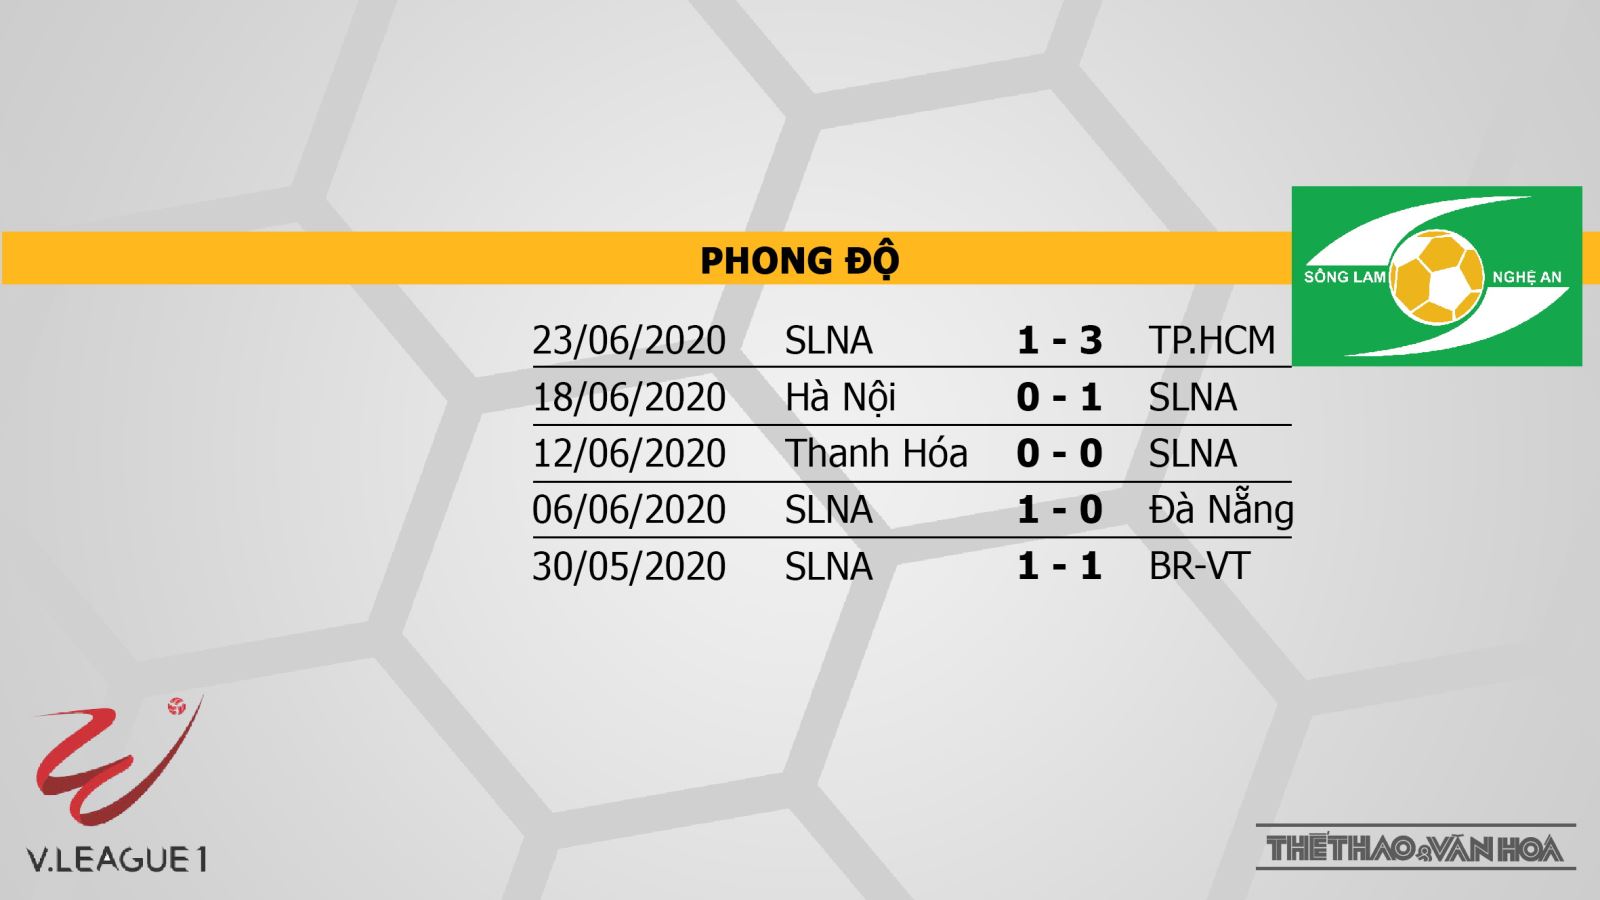 Nam Định vs SLNA, SLNA, Nam Định, trực tiếp bóng đá, bóng đá hôm nay, trực tiếp Nam Định vs SLNA, V-League, nhận định bóng đá, kèo bóng đá